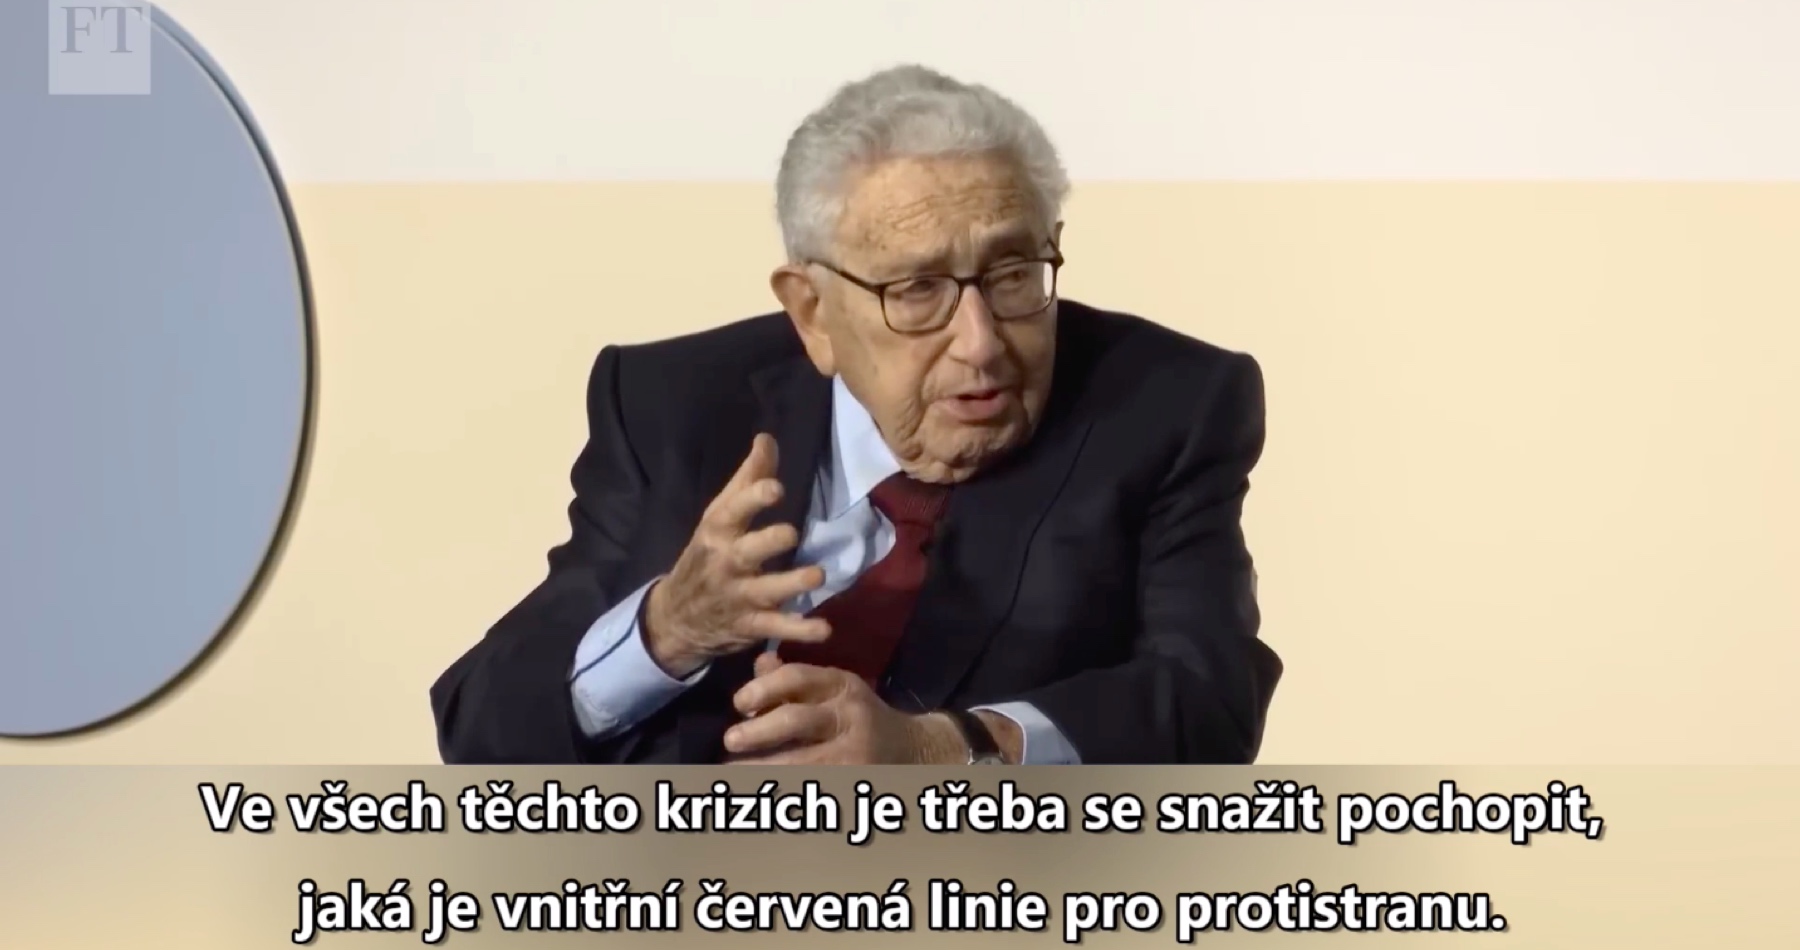 VIDEO: Kissinger varoval, že pokud se s Ruskem nezačne znovu mluvit, dojde na jaderné zbraně: „Vehnali jsme Rusko do náruče Číny a sjednotili tak do spojenectví dva největší nepřátele USA a kolektivního Západu!“